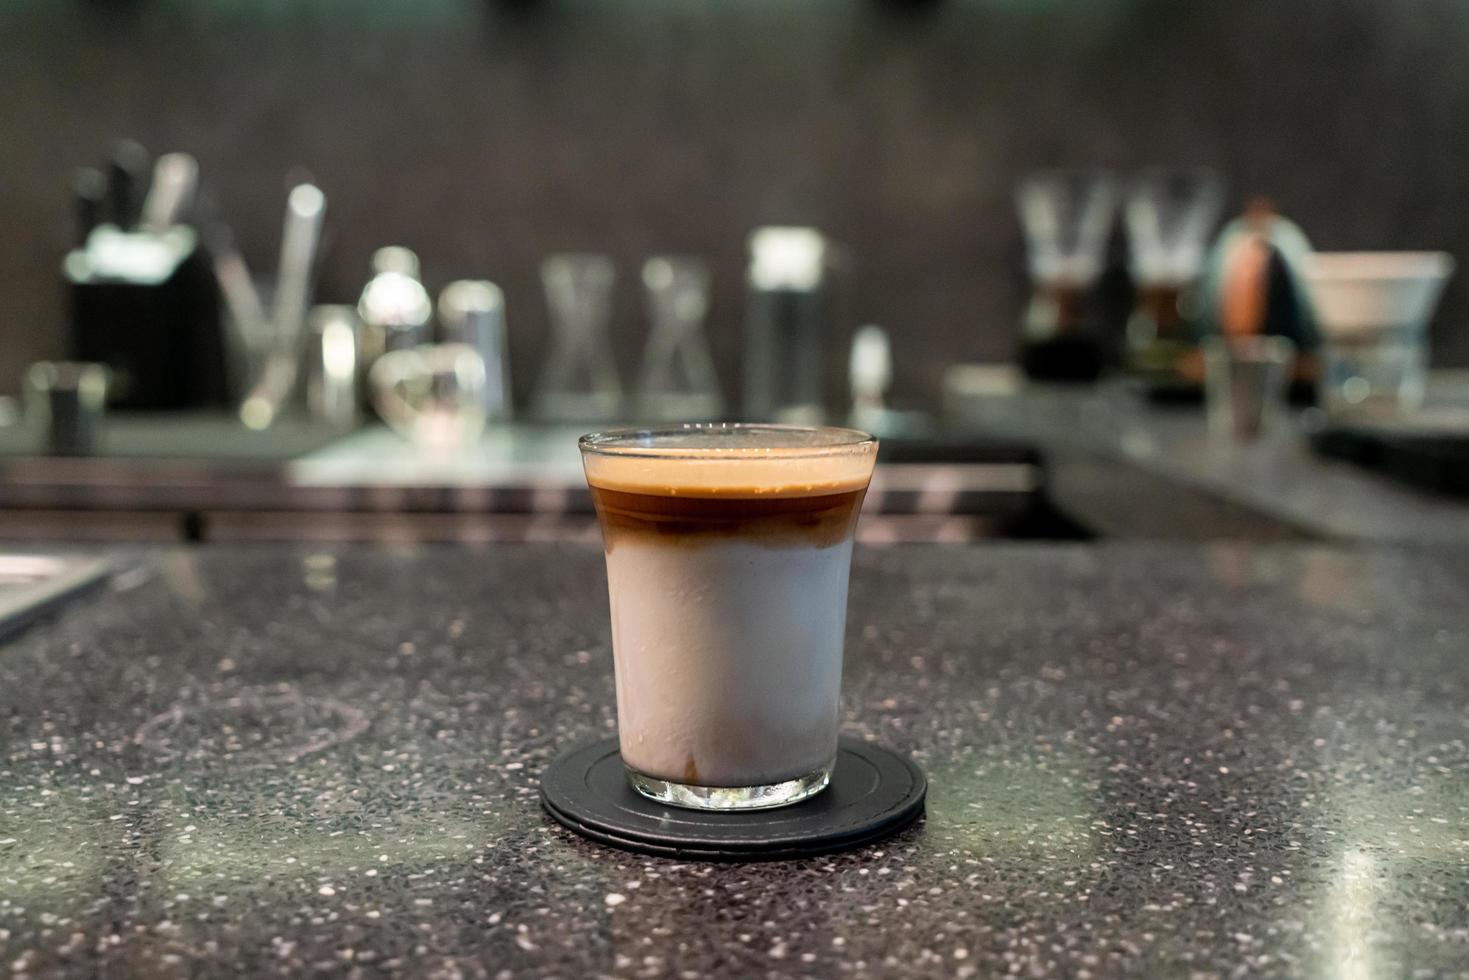 smutsig kaffekopp, espressokaffe med mjölk i cafébaren foto